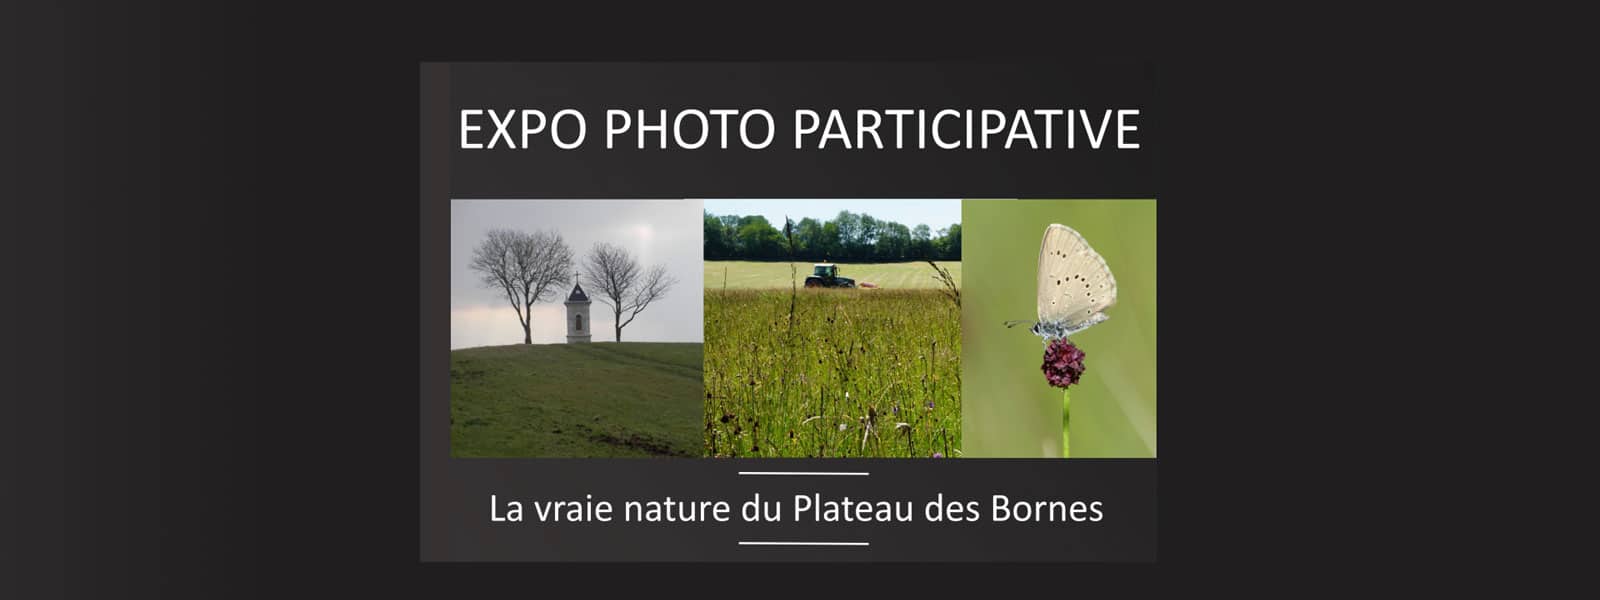 Expo-photo participative « La vraie nature du Plateau des Bornes »